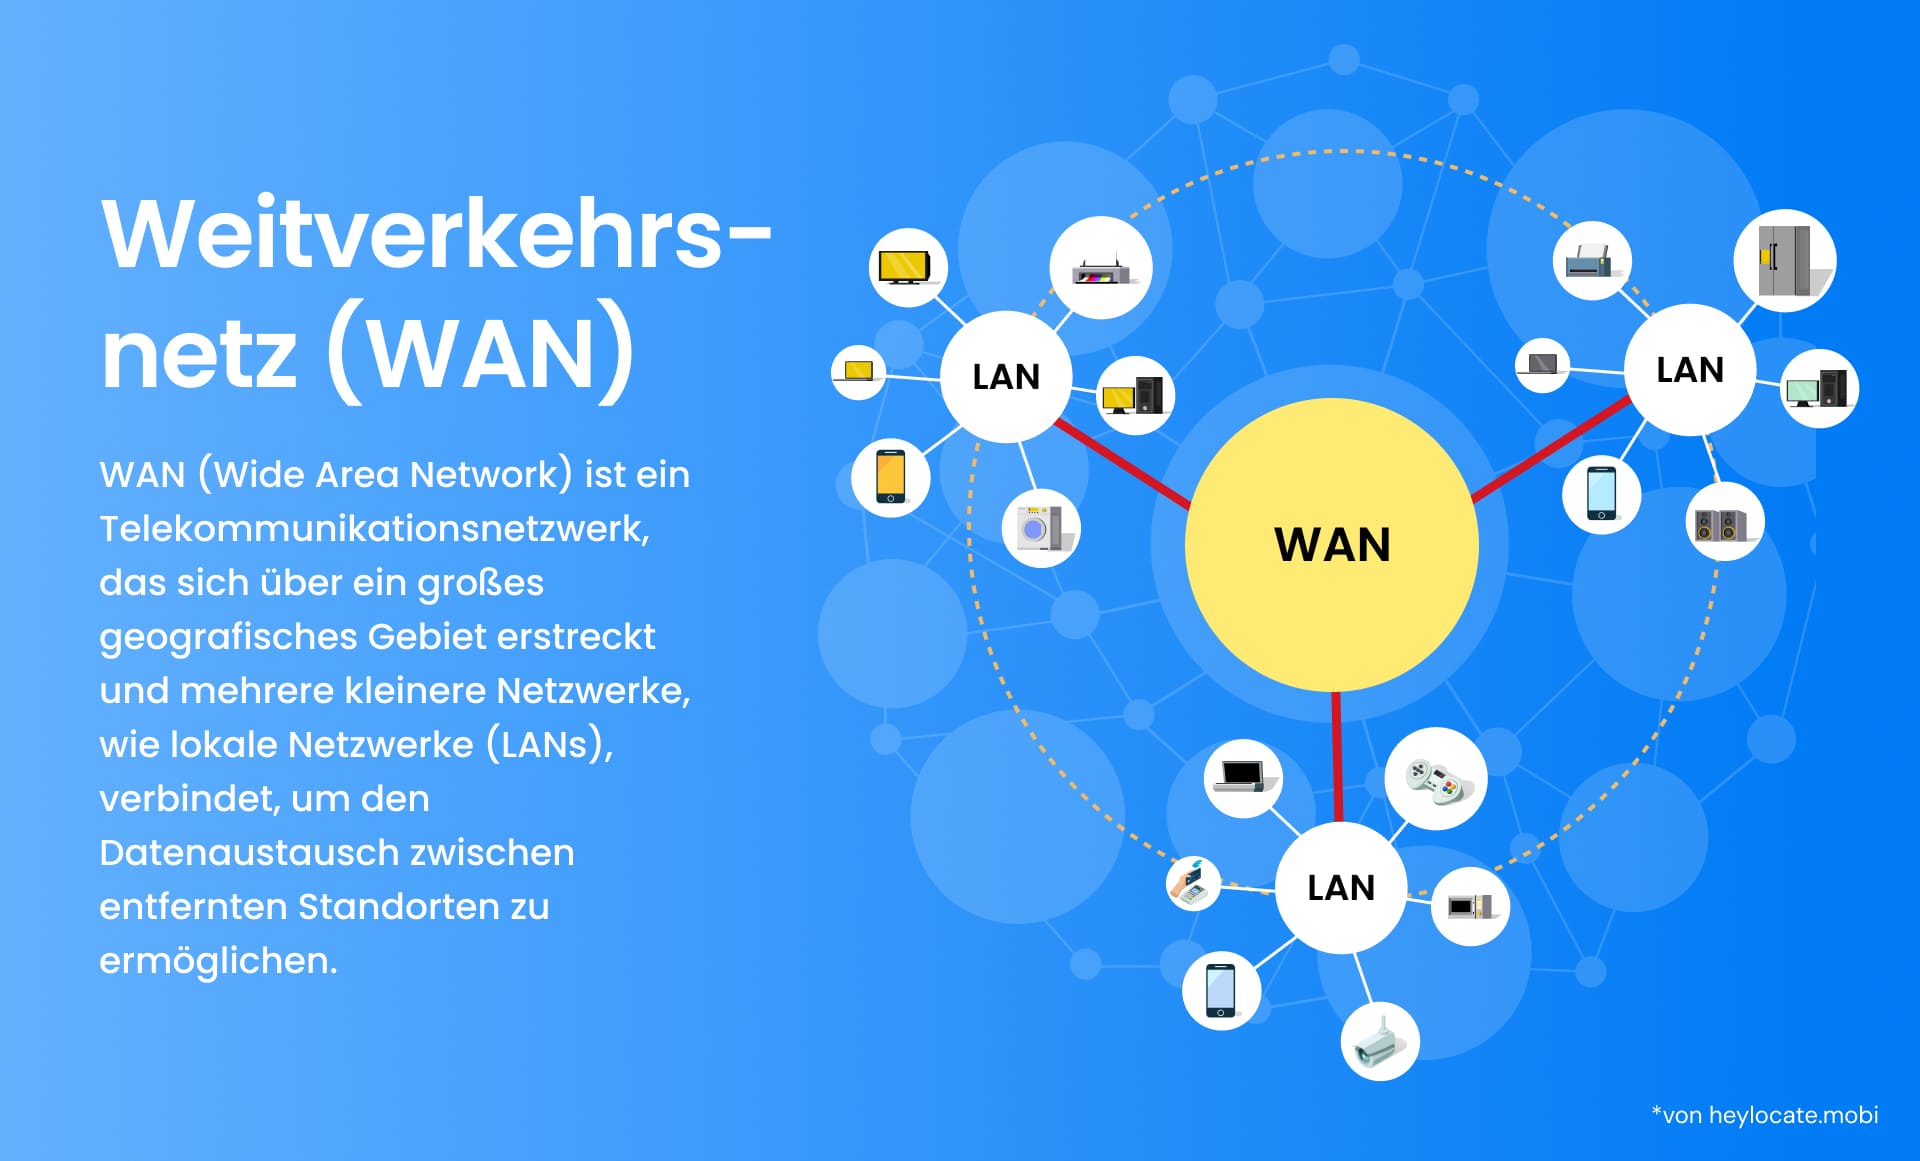 Diese Grafik stellt ein Wide Area Network (WAN) dar und verdeutlicht, wie es mehrere kleinere Netze, z. B. Local Area Networks (LANs), über ein großes geografisches Gebiet miteinander verbindet, um den Datenaustausch zwischen weit entfernten Standorten zu erleichtern.